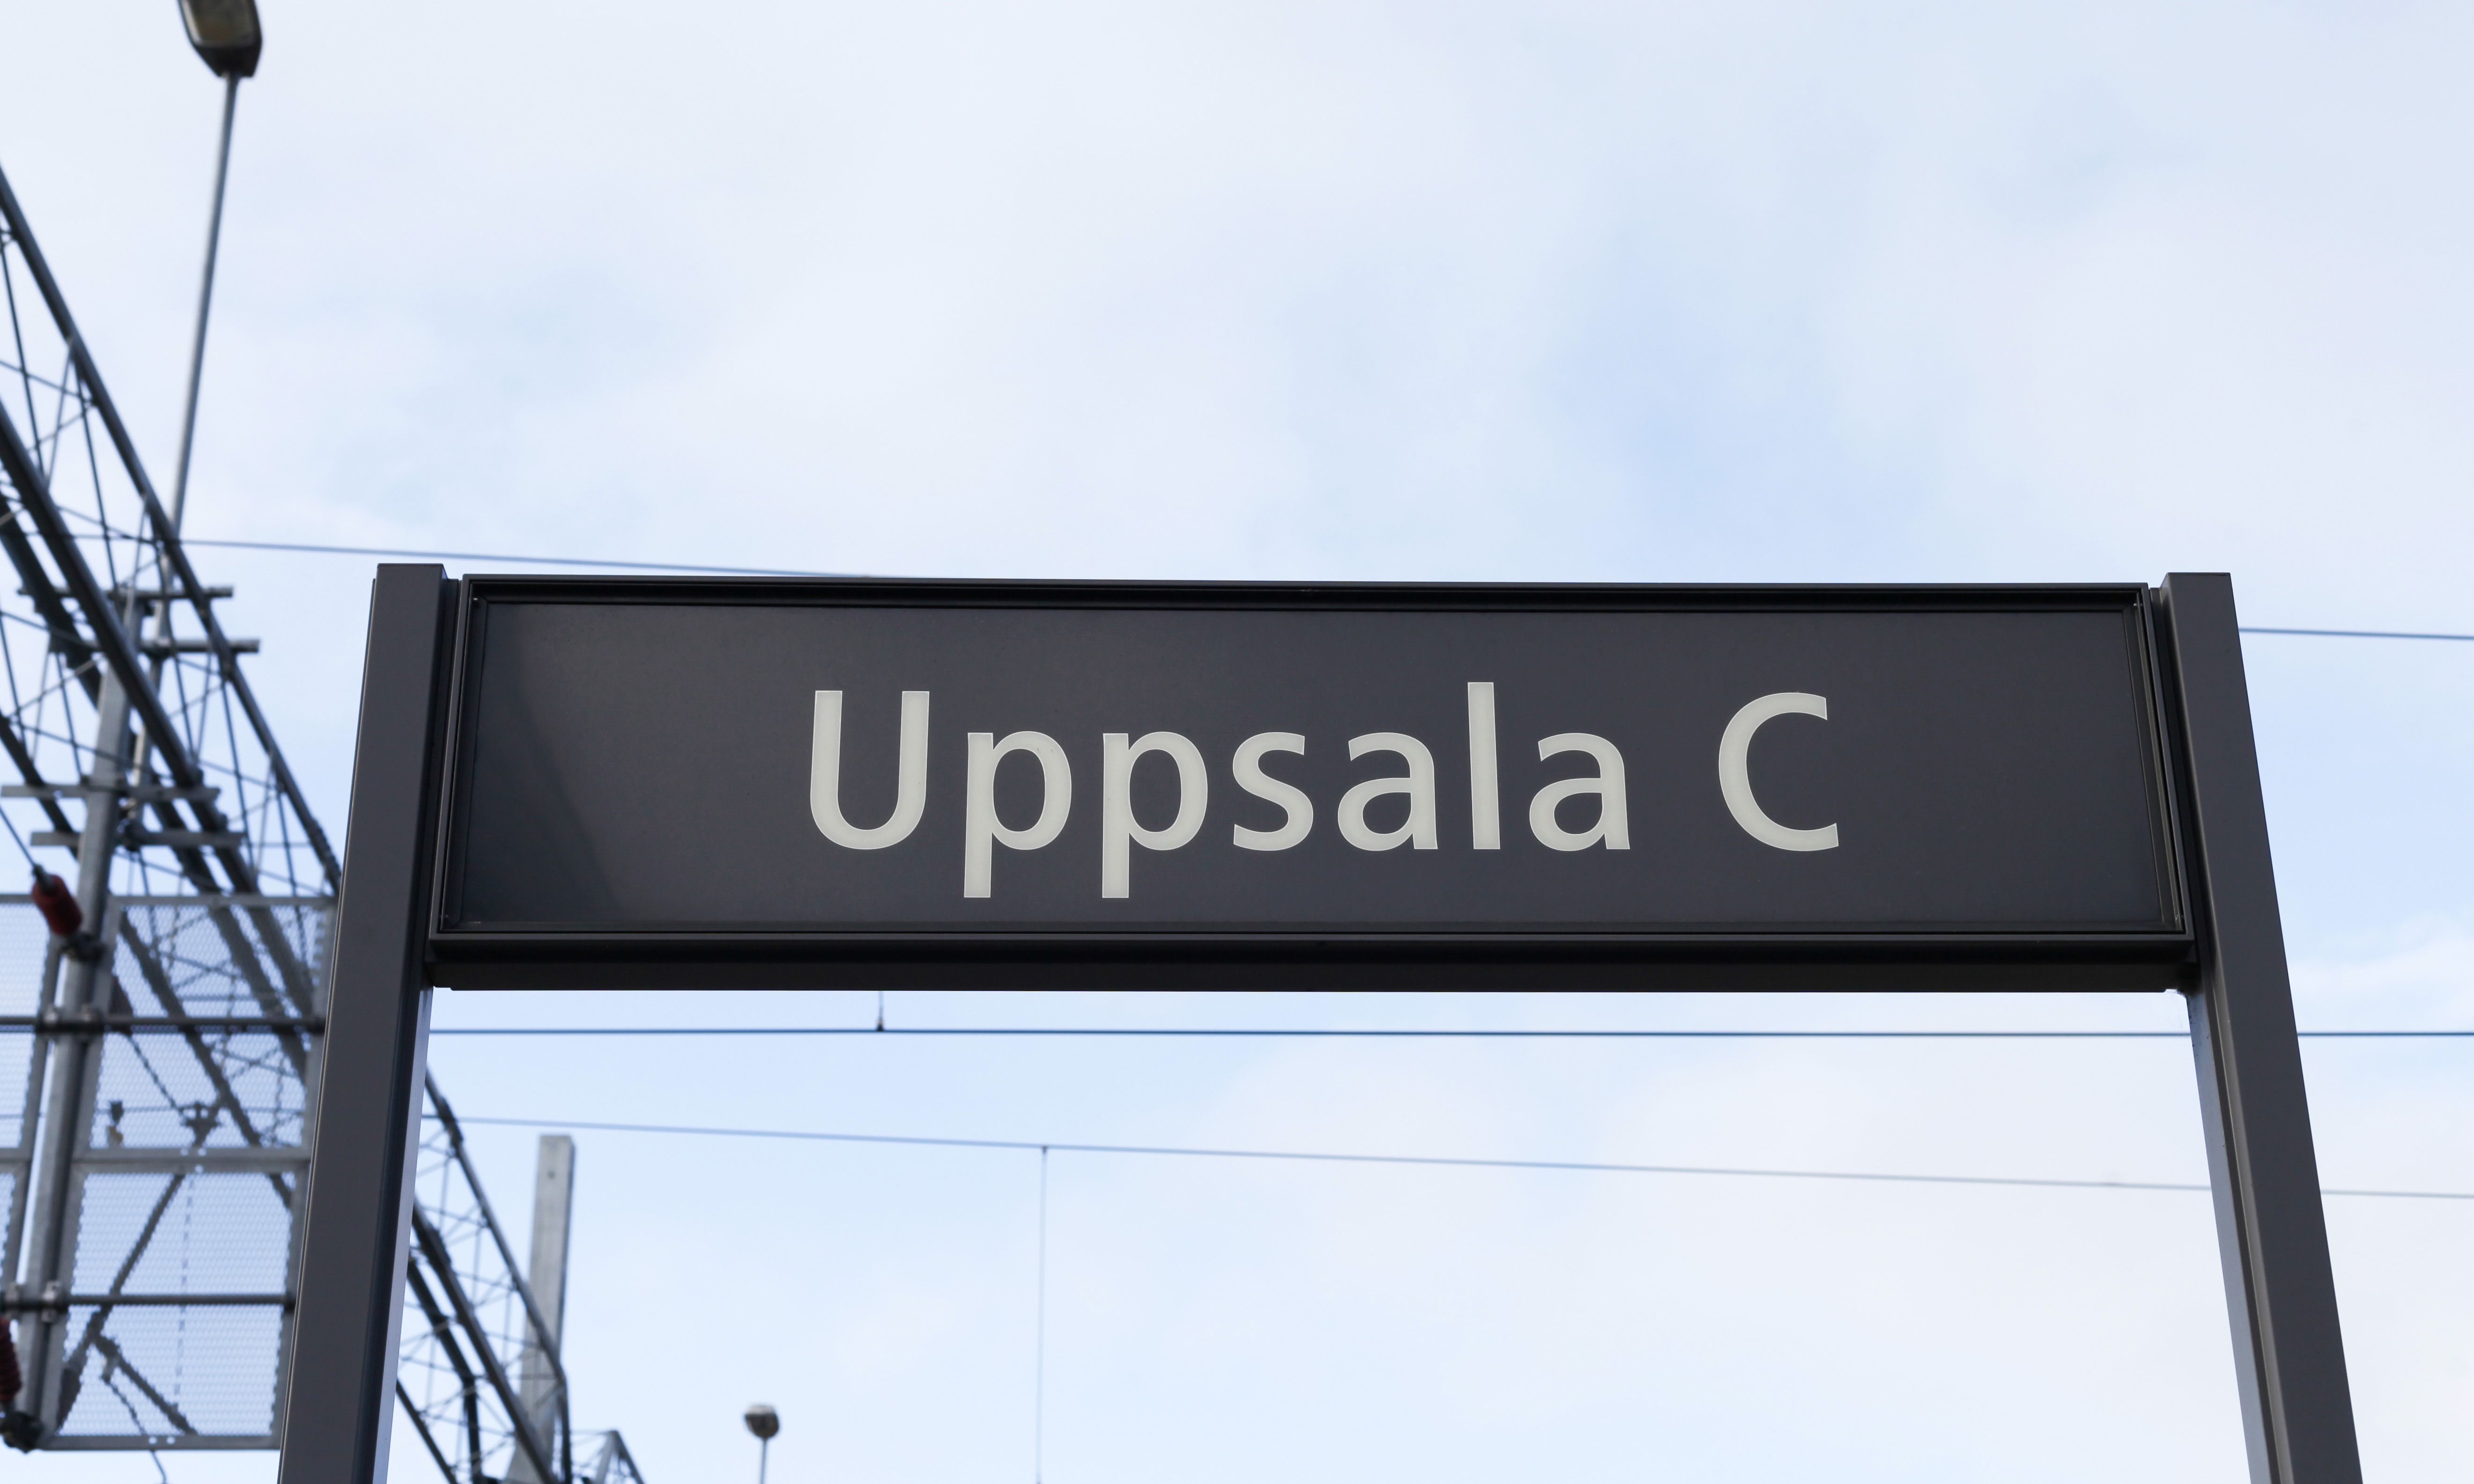 Regeringen föreslår att de regionala etikprövningsnämnderna avvecklas och ersätts av den nya Etikprövningsmyndigheten. Enligt direktivet från regeringen ska den blivande myndigheten placeras i Uppsala.